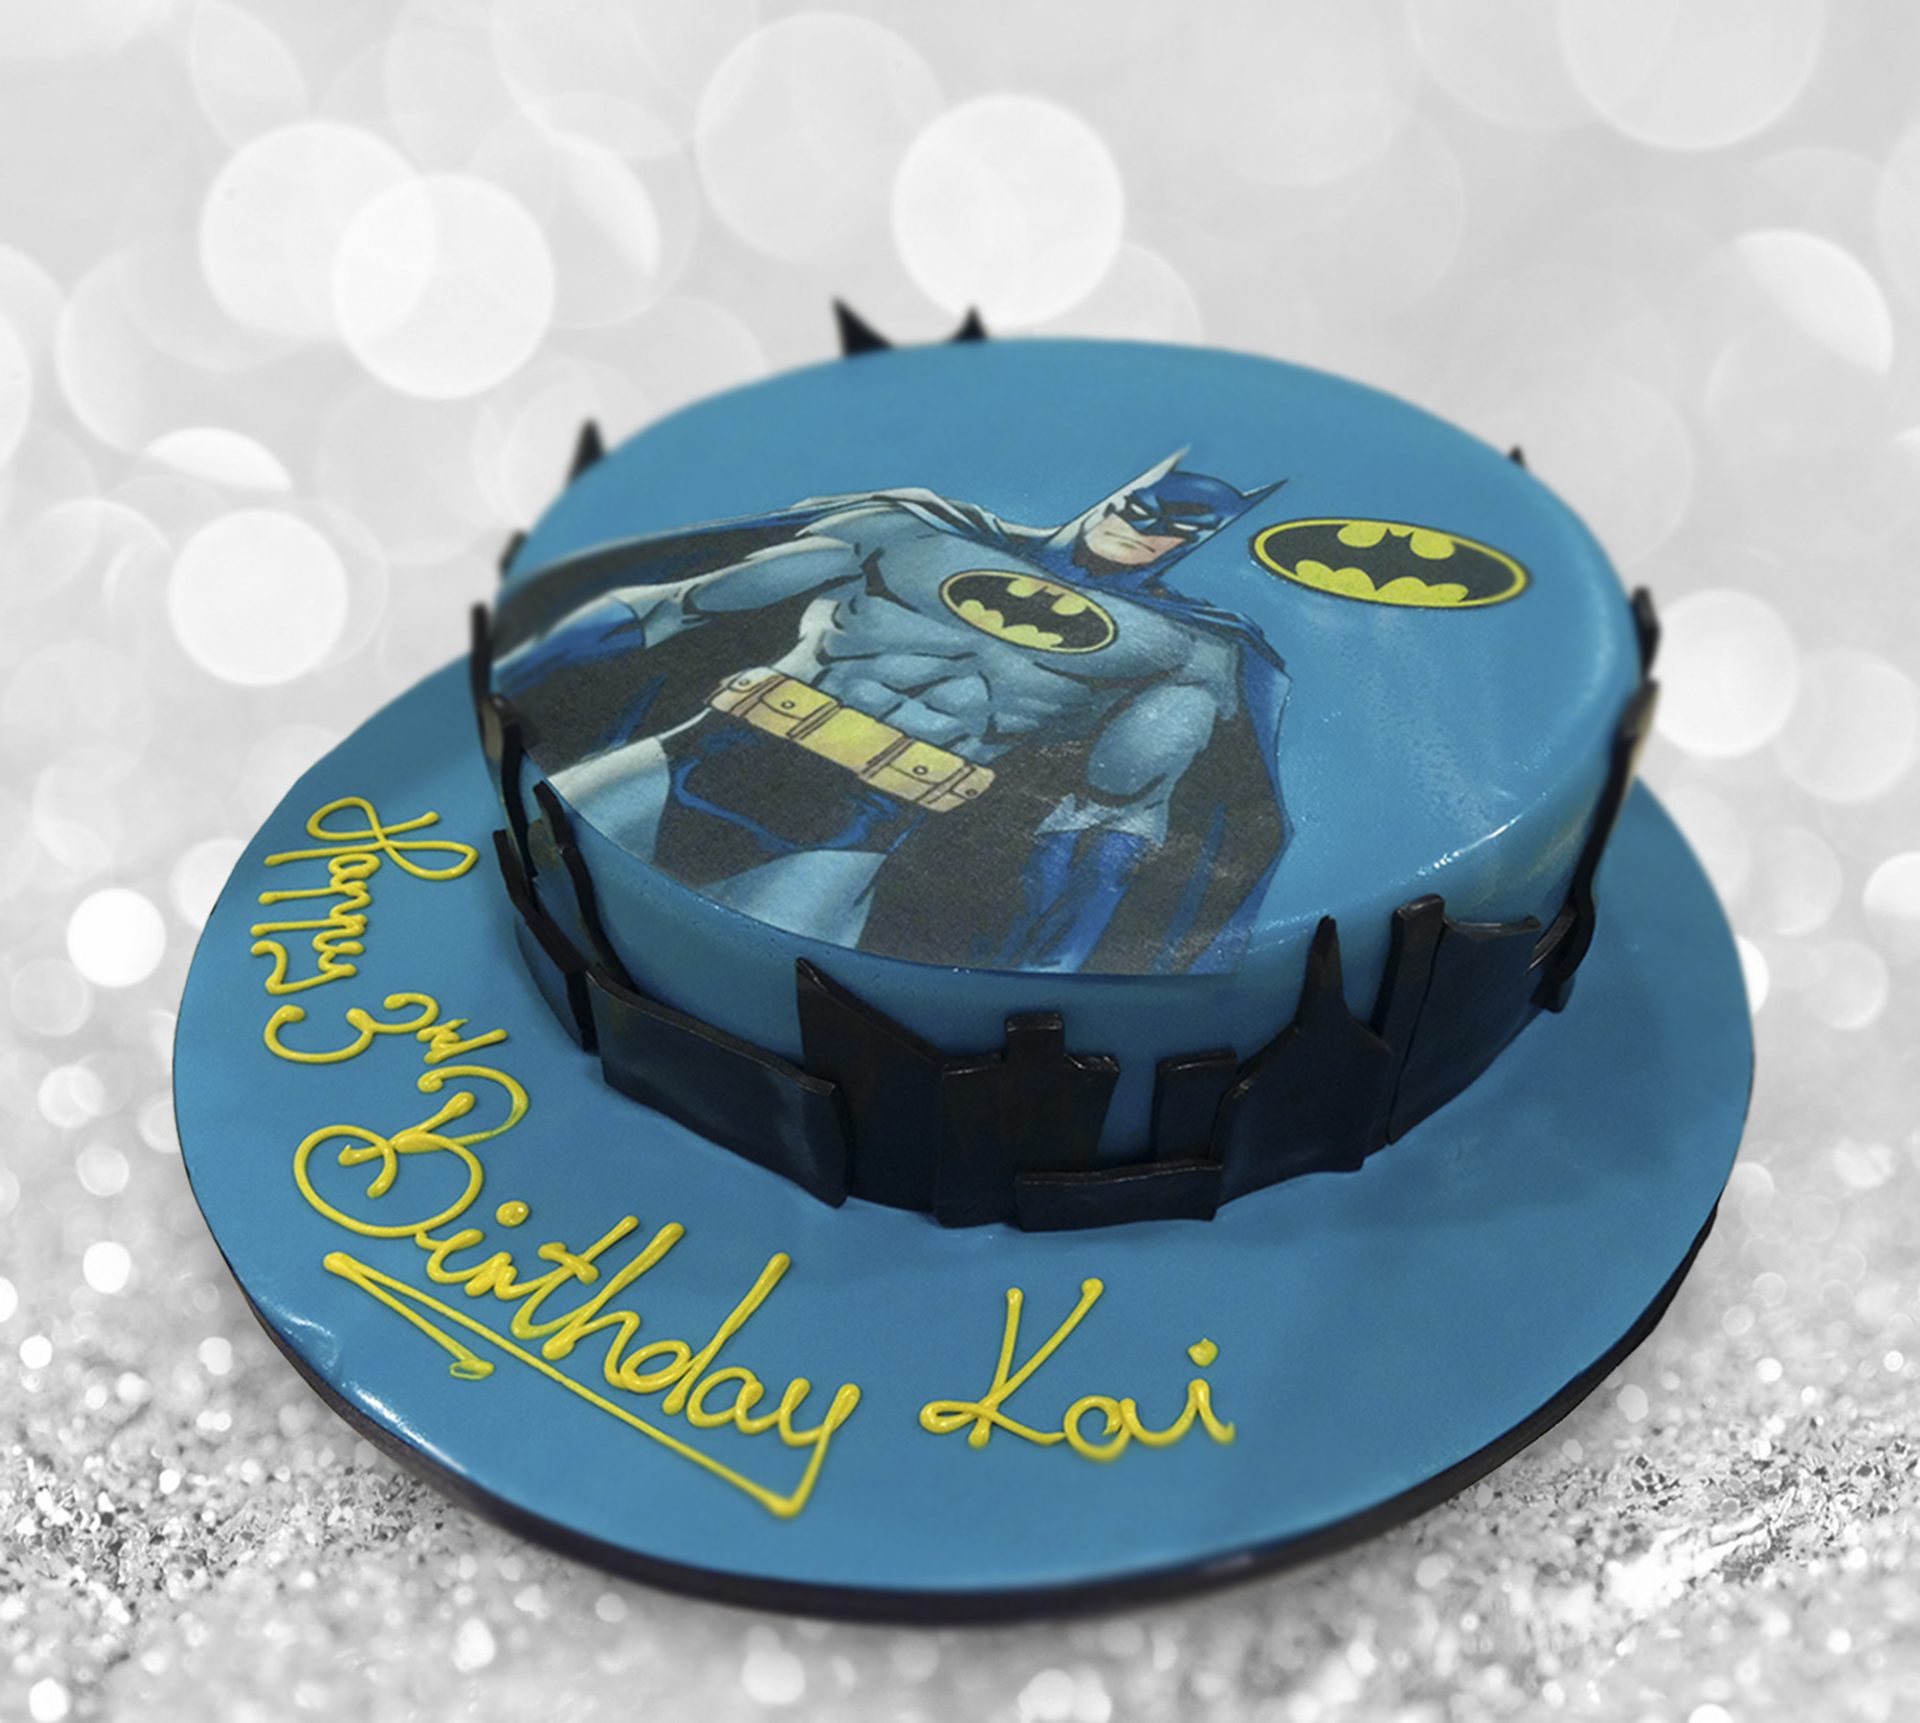 Batman Birthday Cake by bakisto - the cake company